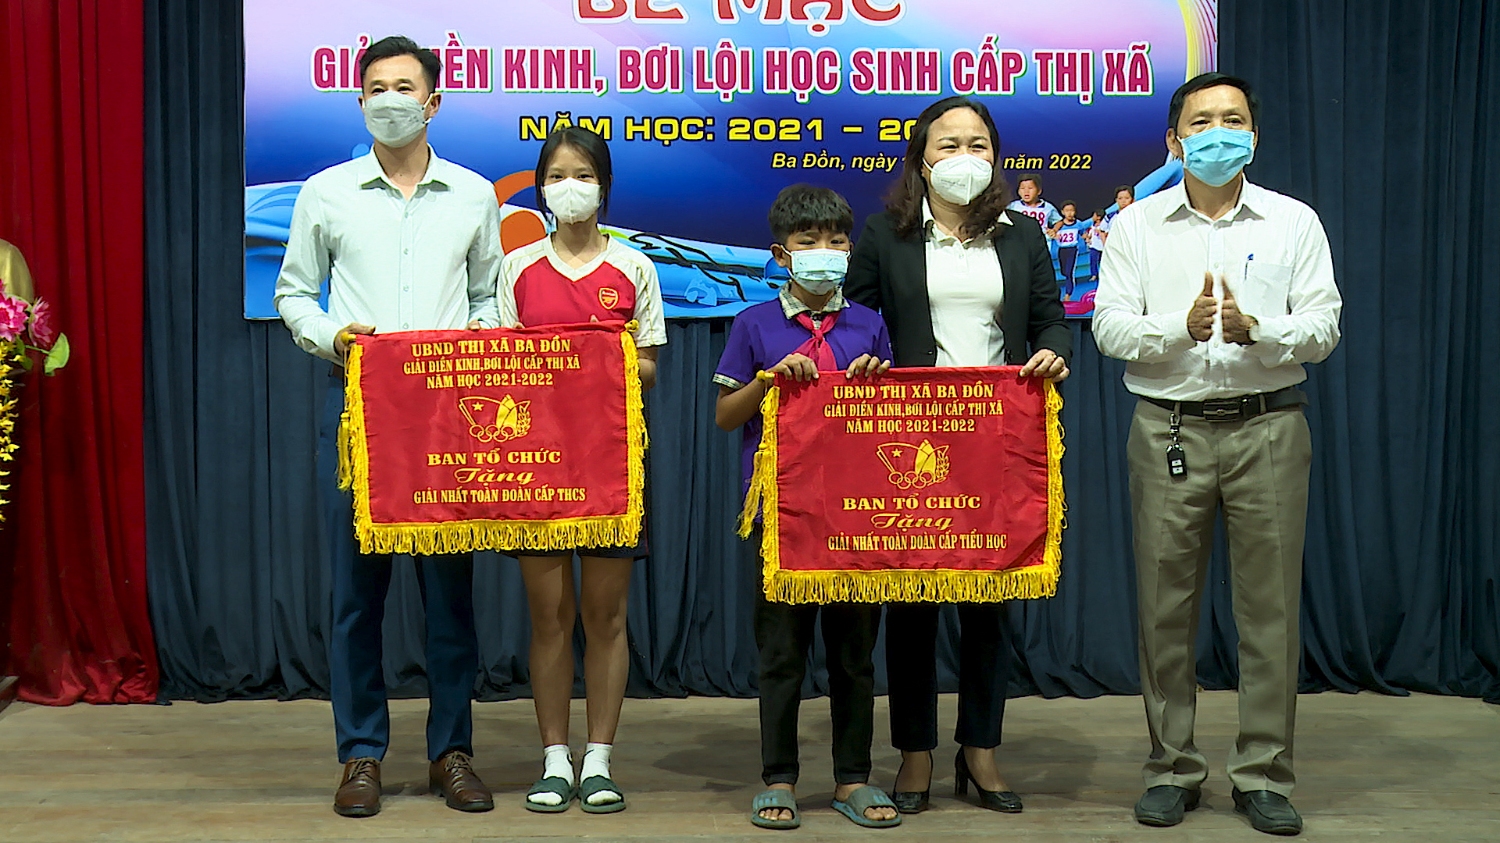 Ban tổ chức đã trao giải Nhất cấp THCS cho đoàn trường THCS Quảng Minh và cấp Tiểu học cho đoàn trường TH Cồn Sẻ